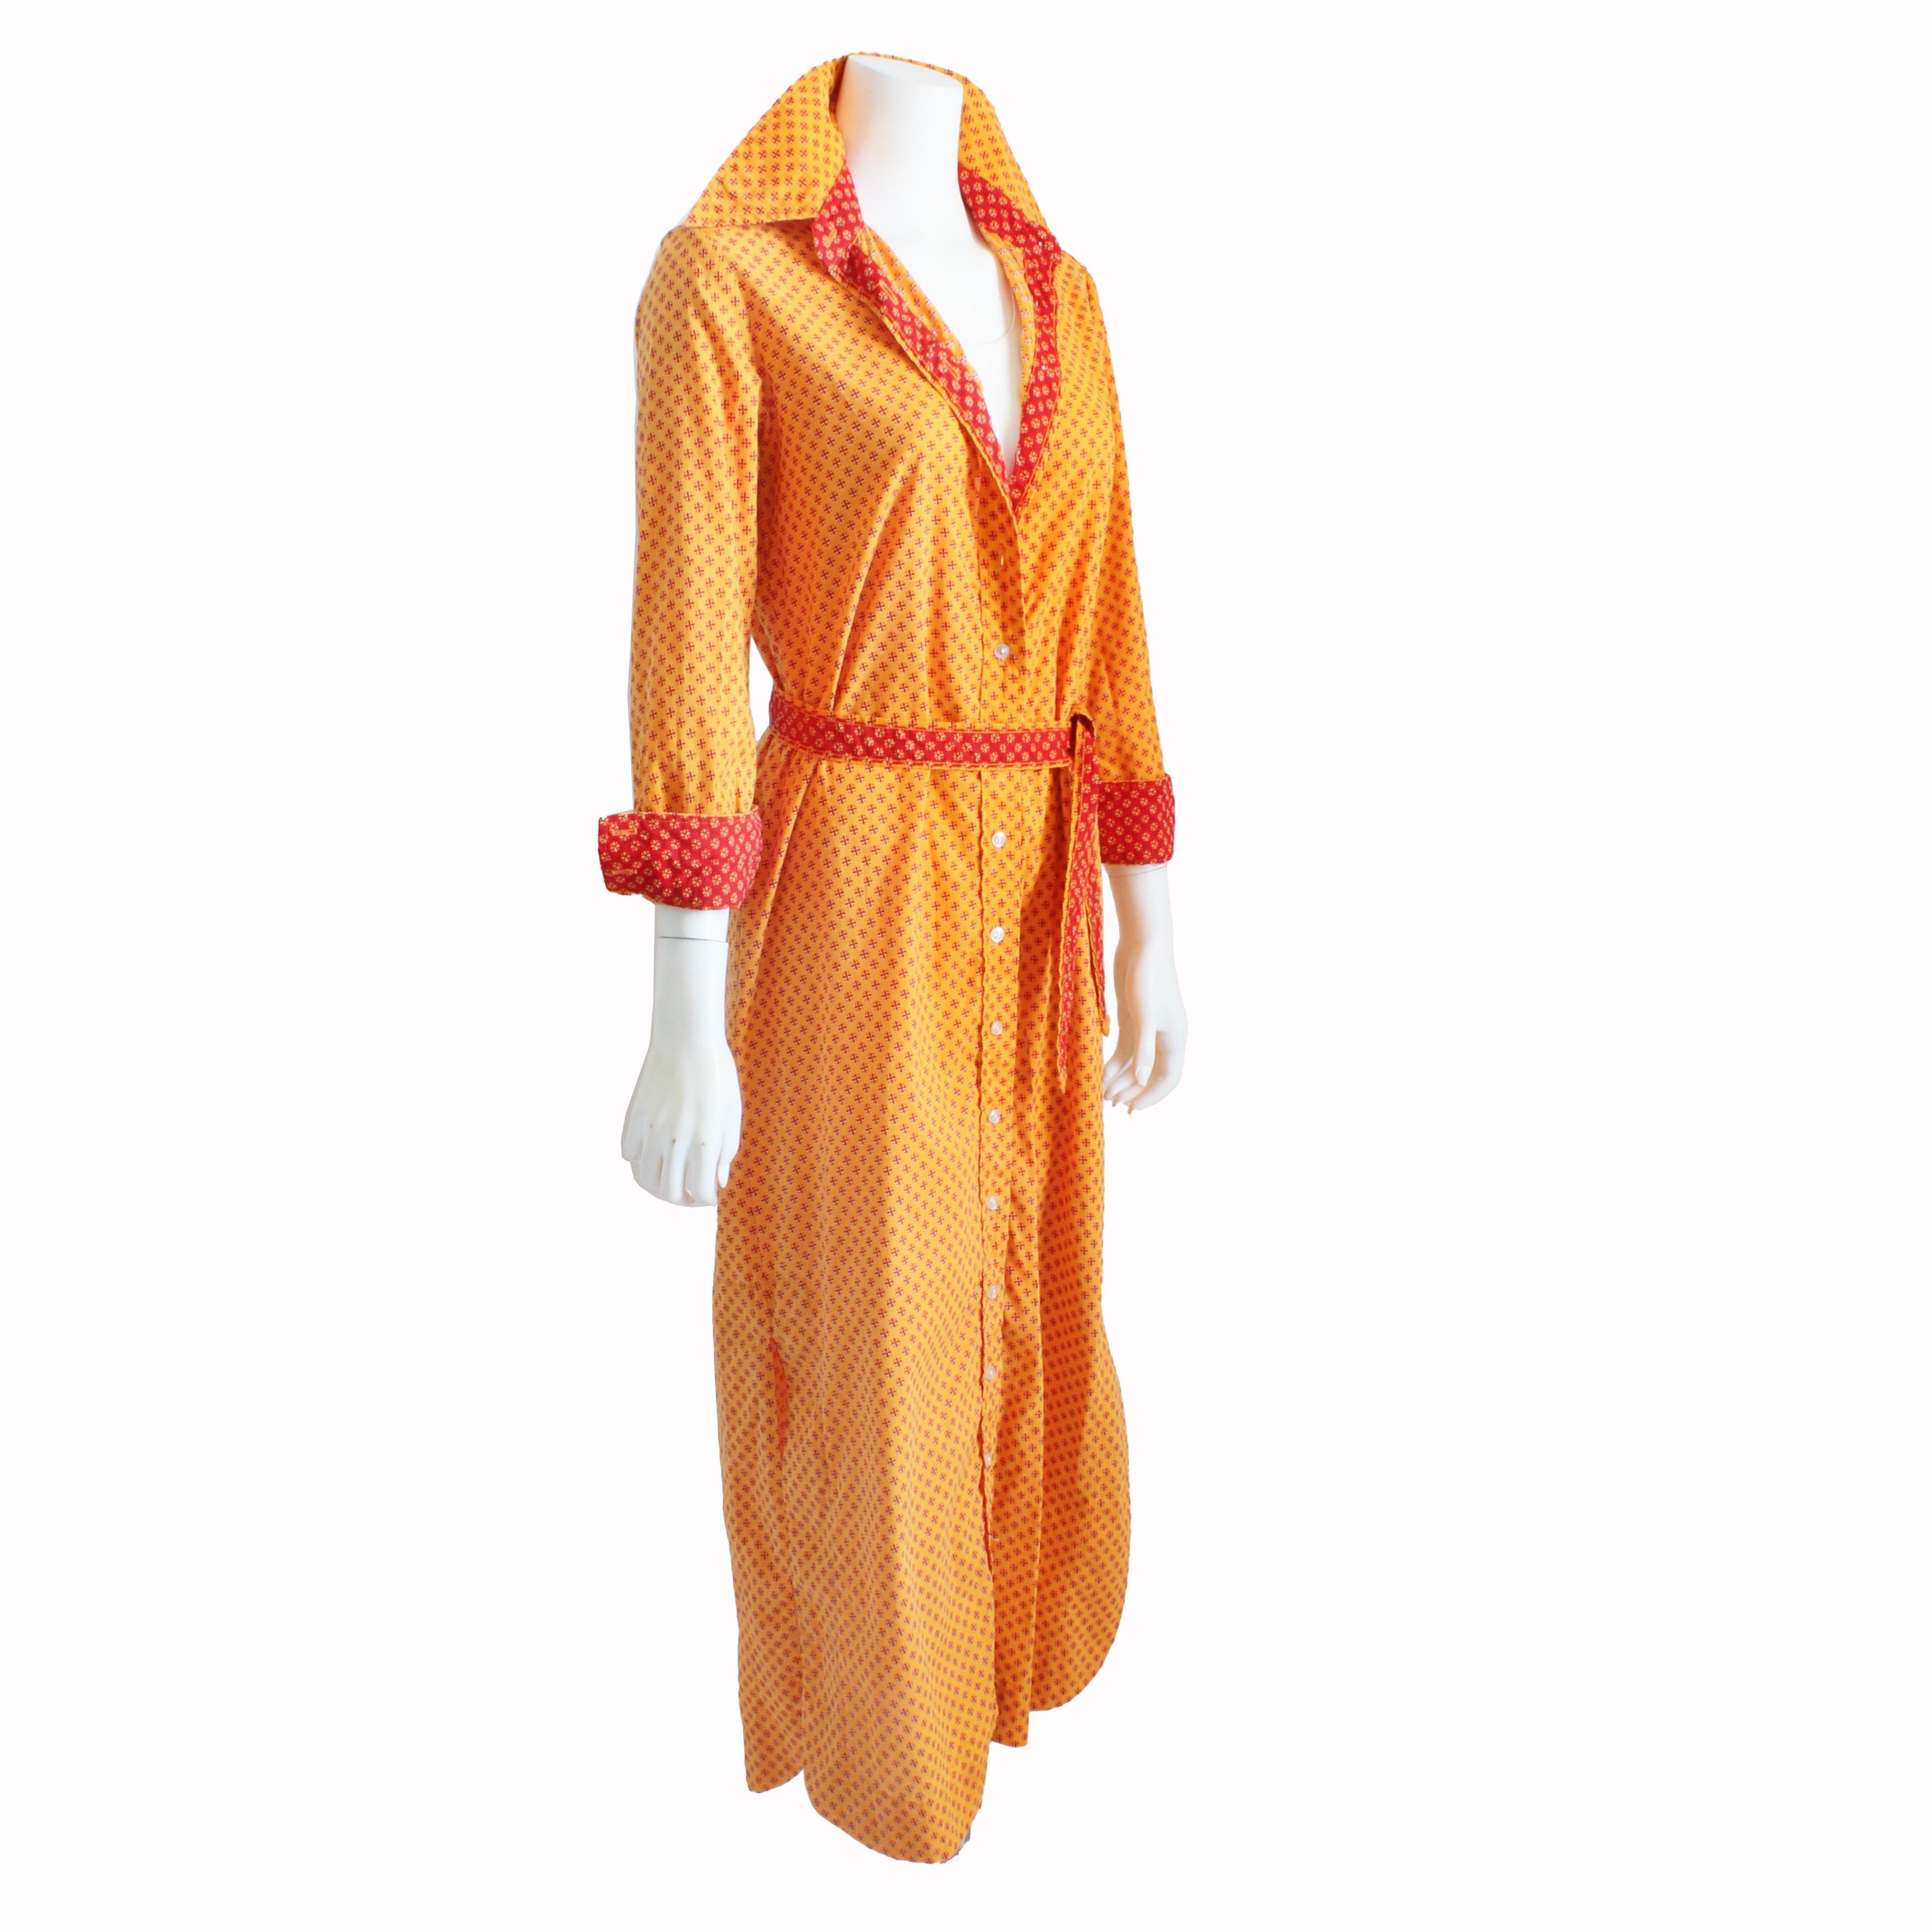 Authentique, d'occasion, vintage Geoffrey Beene robe taille chemise boutonnée avec ceinture assortie, probablement fabriquée dans les années 70.  Fabriqué en coton, il présente un fabuleux imprimé de marguerites orange avec un imprimé rouge